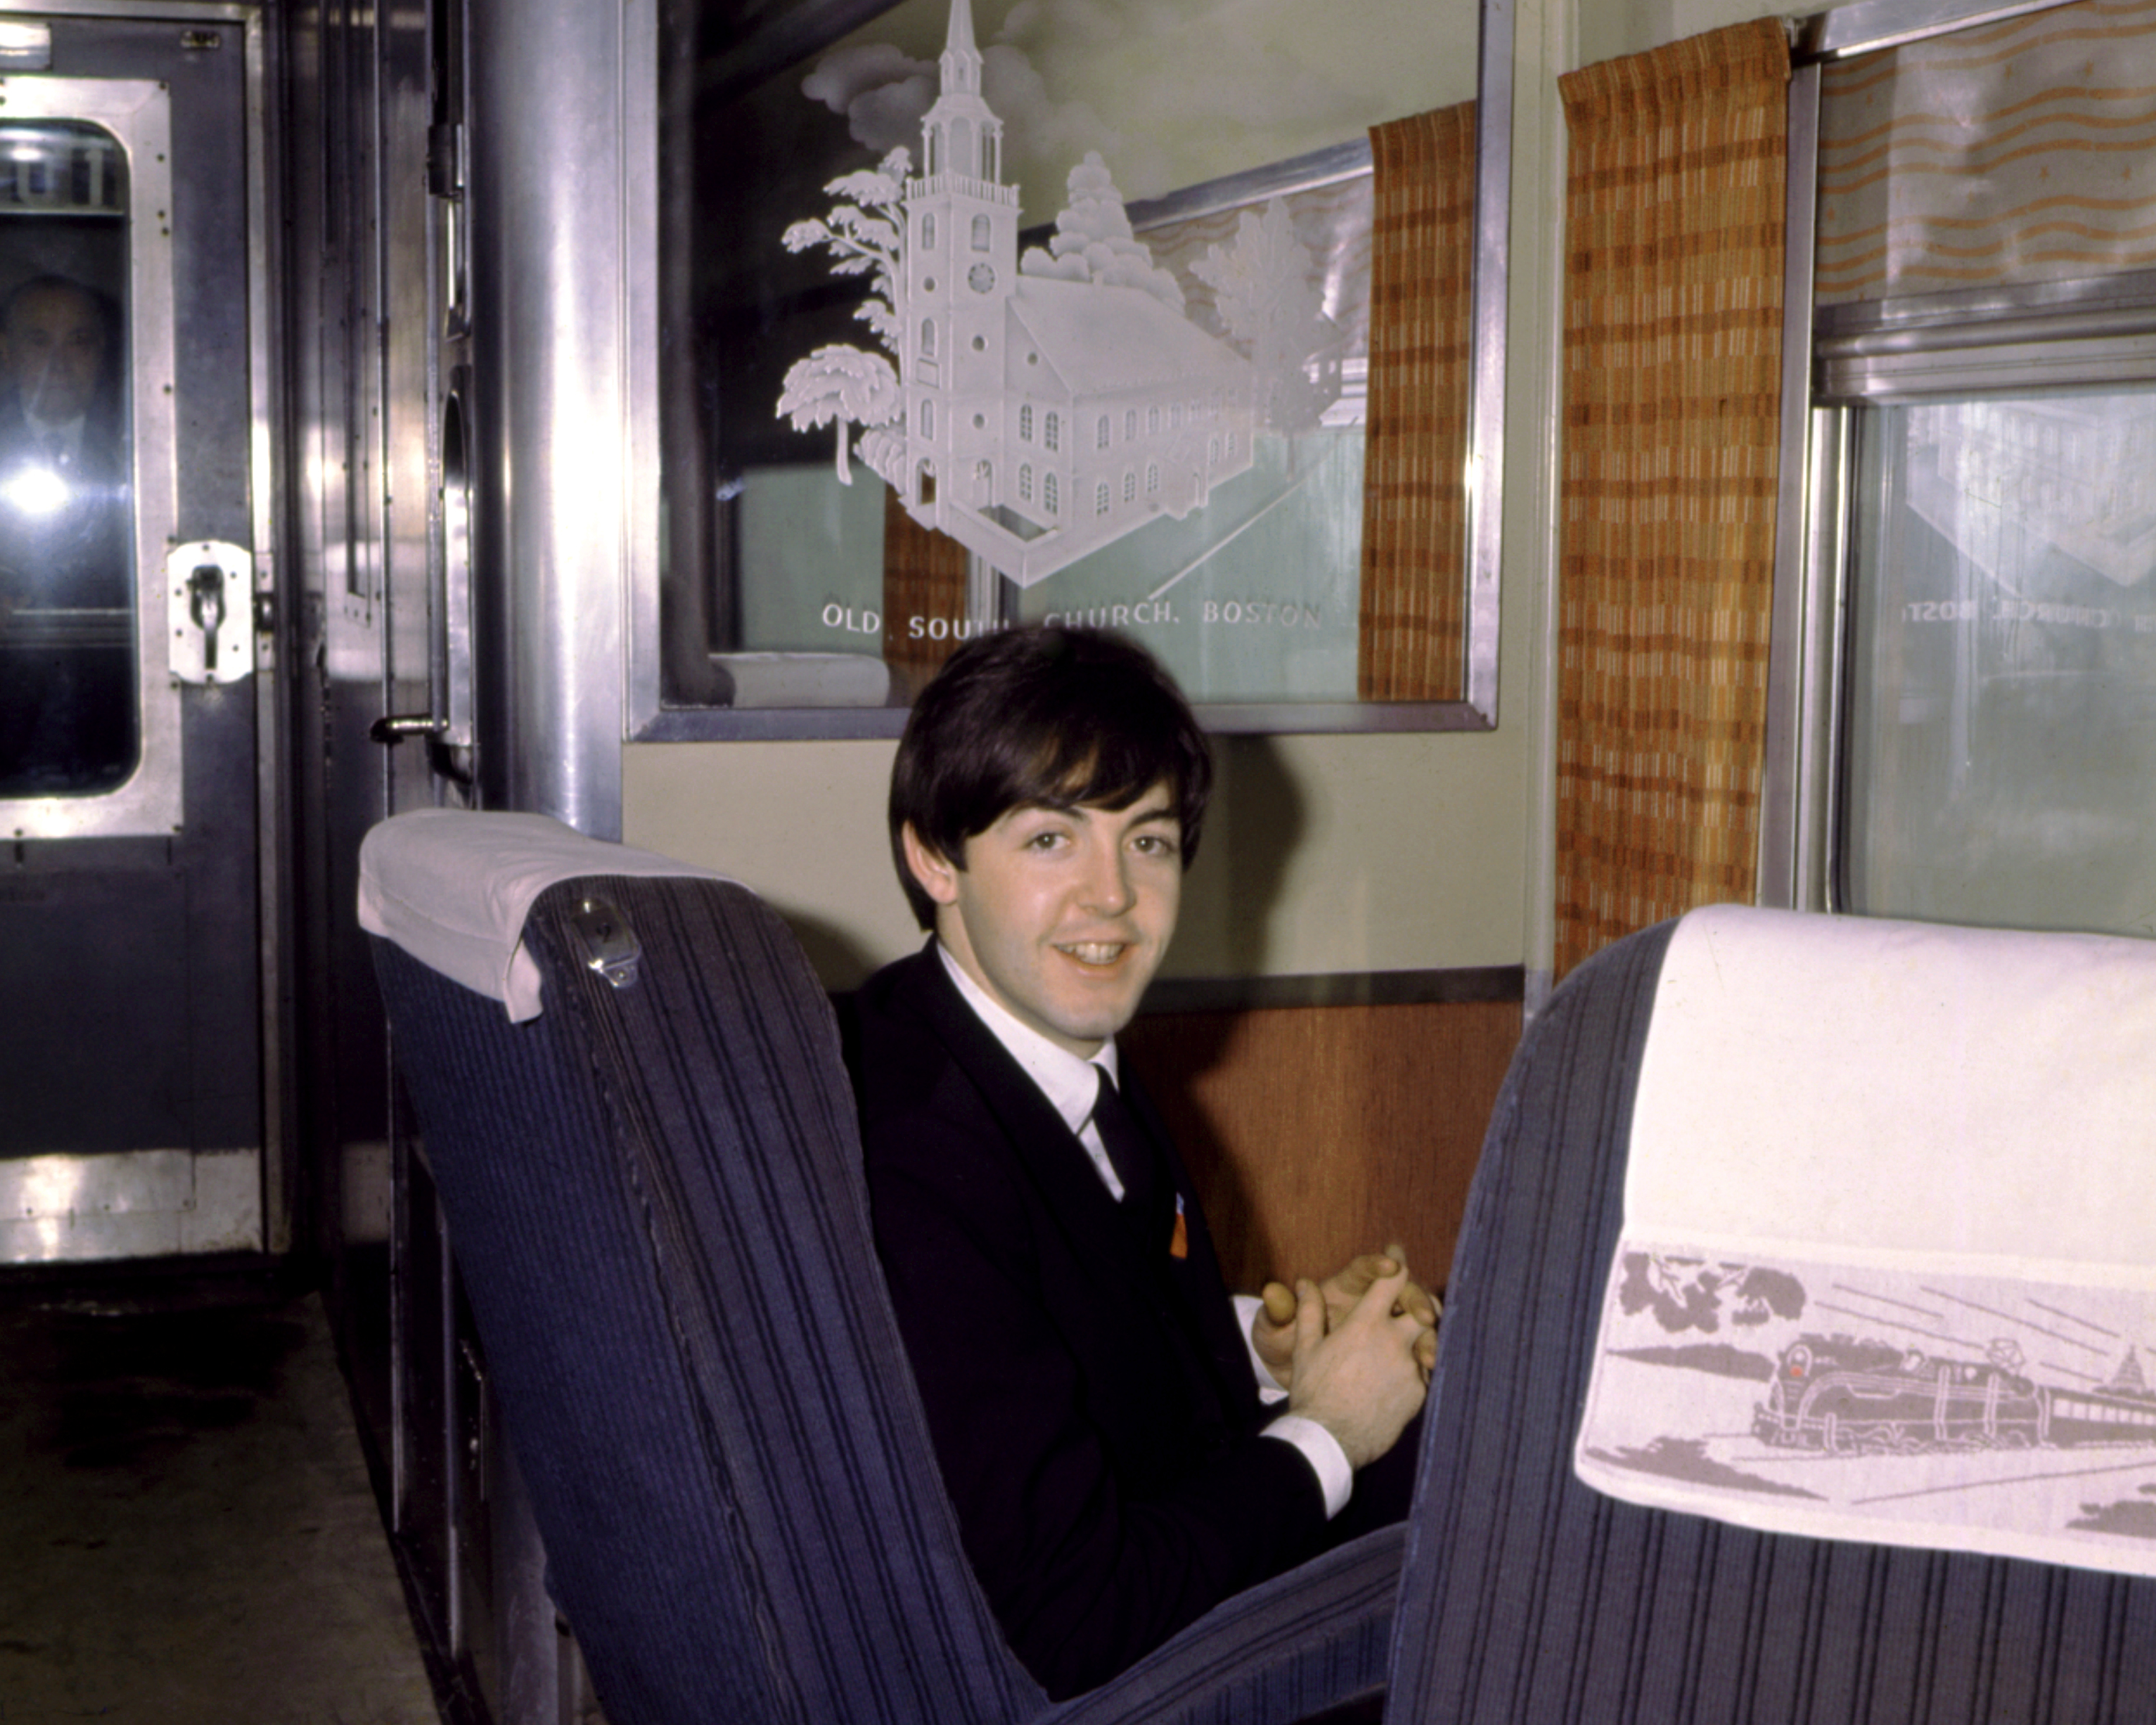 Paul McCartney, de la banda de rock "The Beatles", posa para un retrato sentado en un tren en Boston, Massachusetts, en 1964. | Fuente: Getty Images